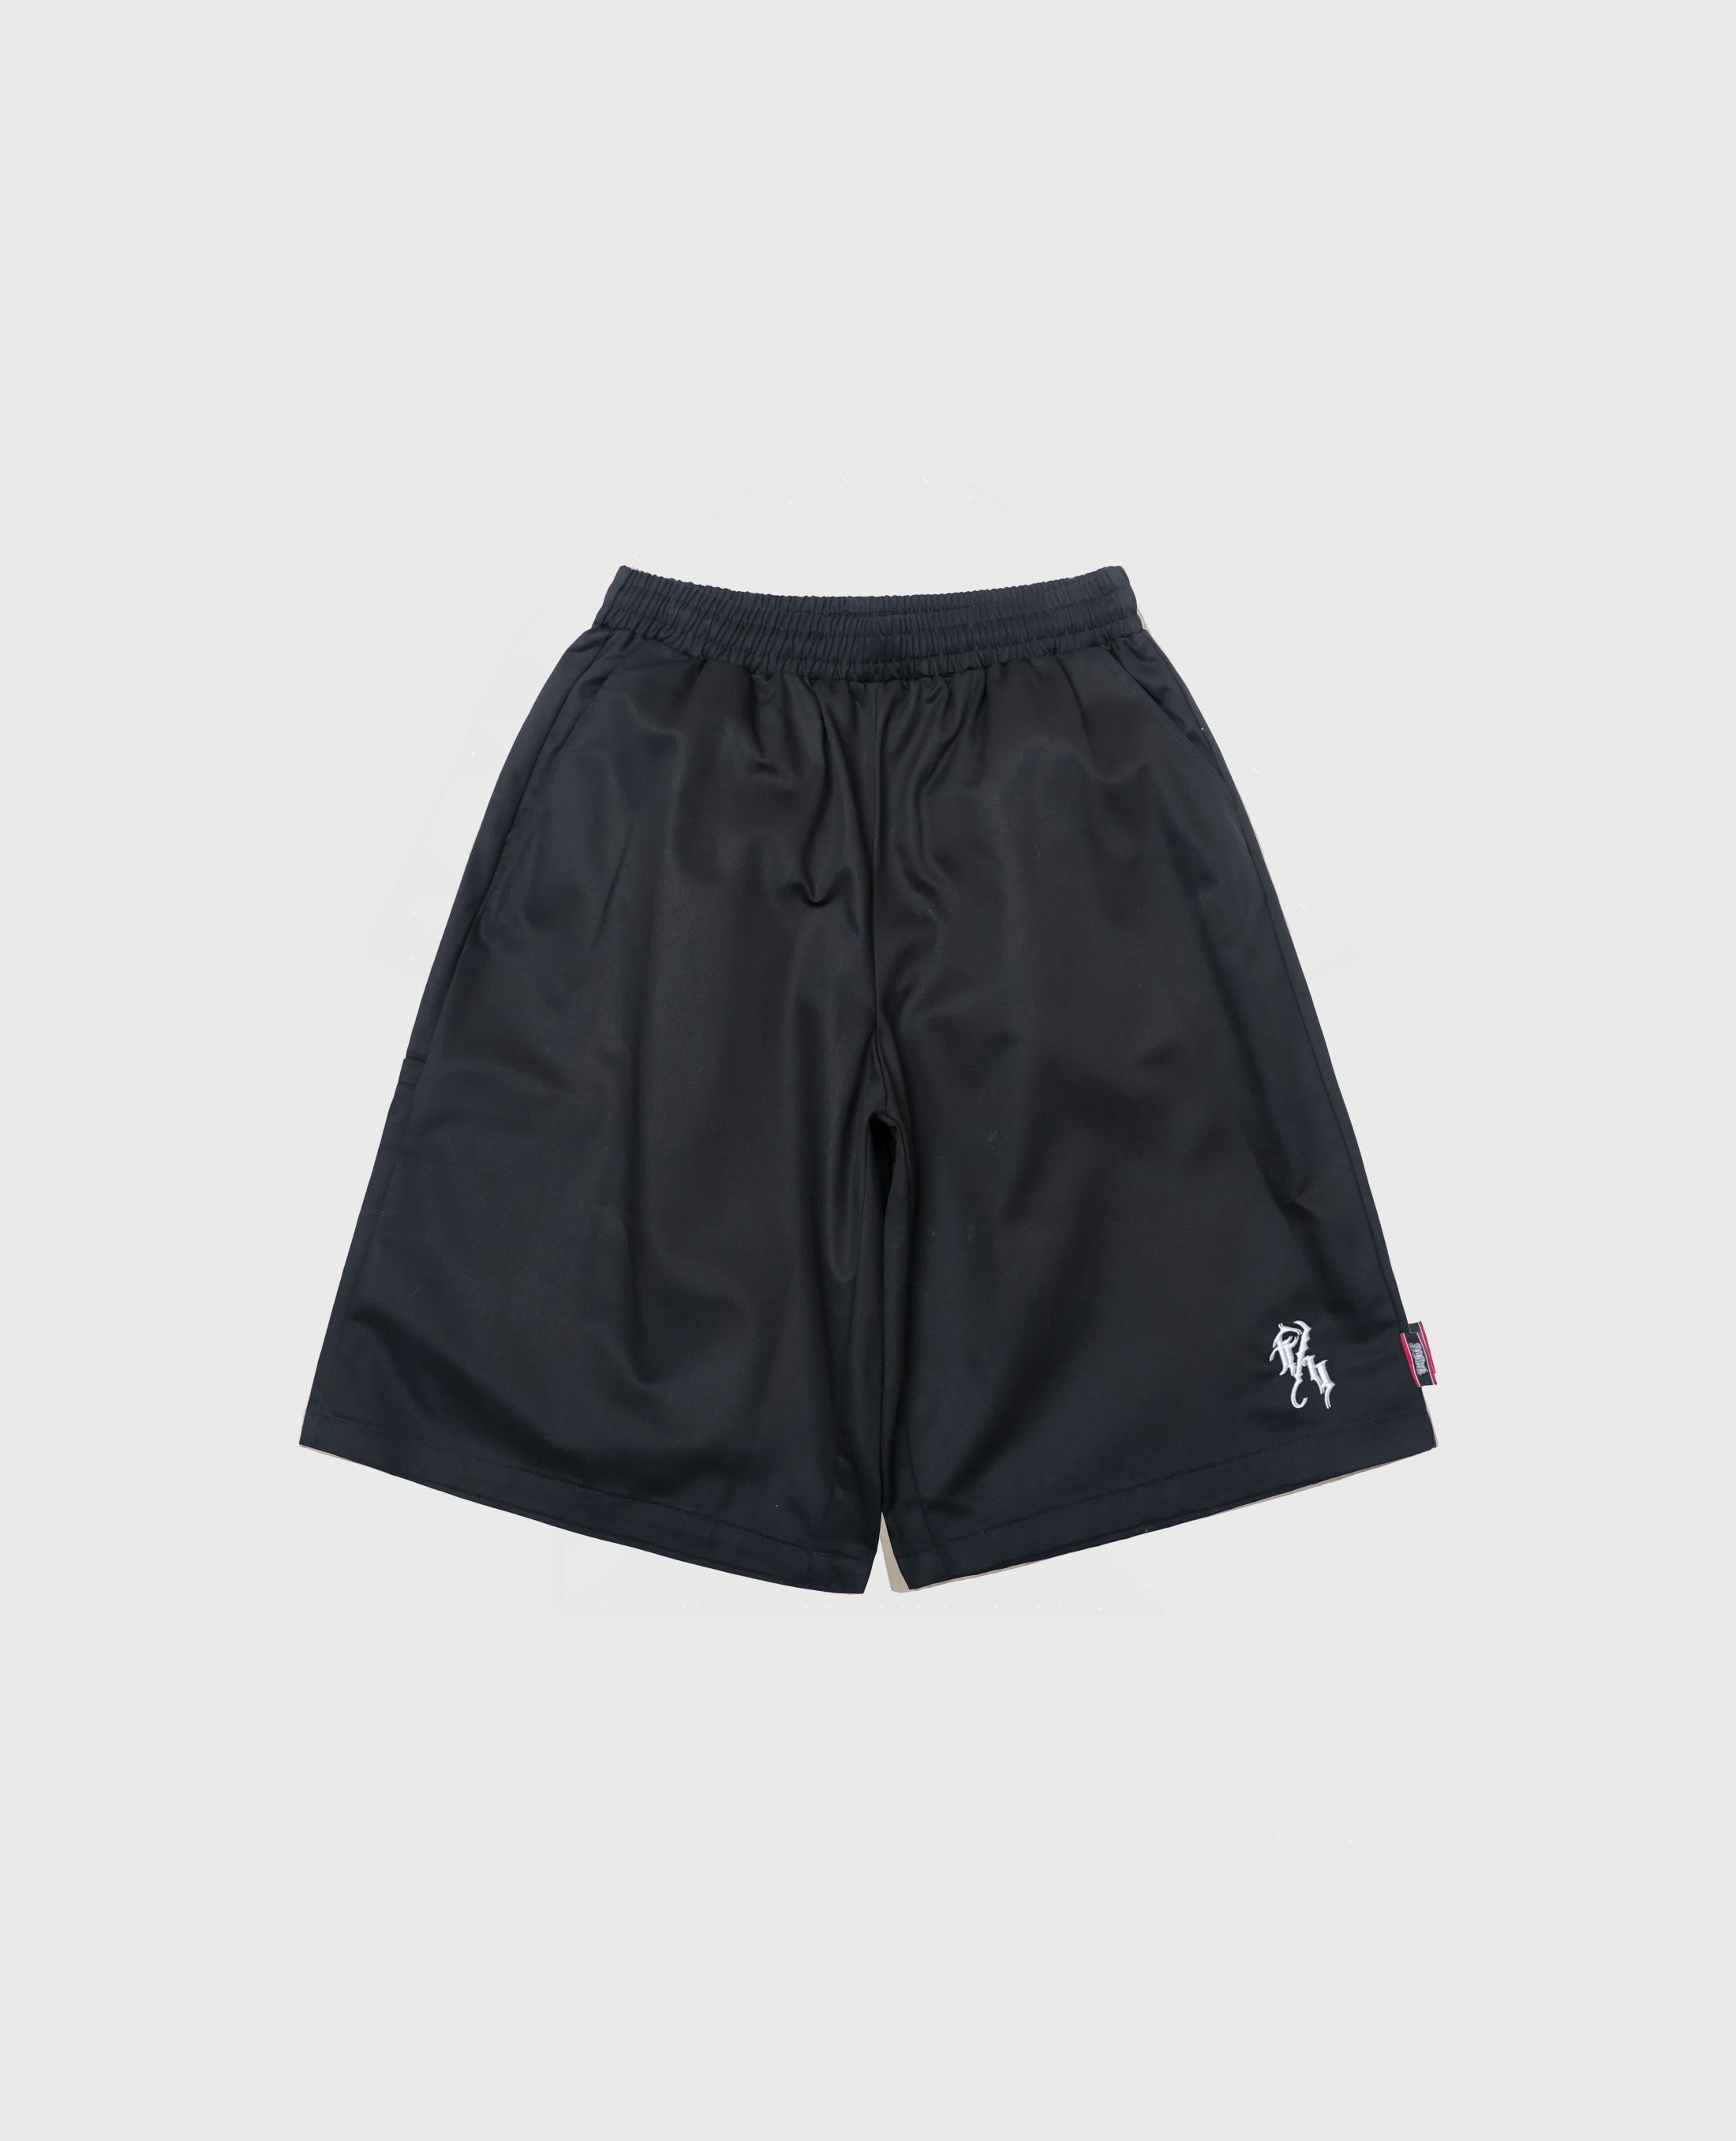 West Coast Shorts